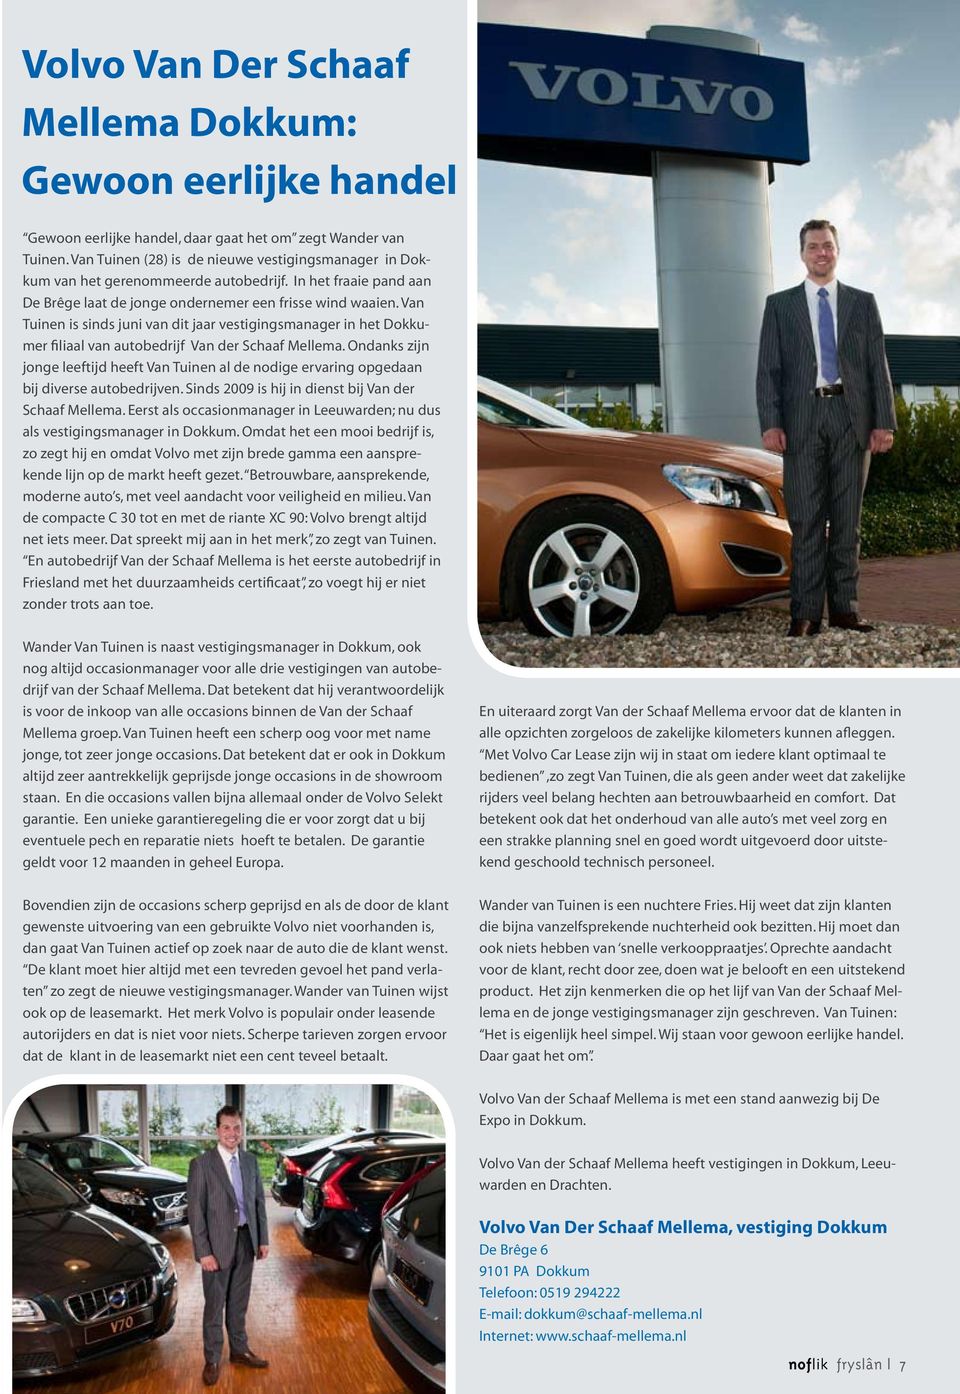 Van Tuinen is sinds juni van dit jaar vestigingsmanager in het Dokkumer filiaal van autobedrijf Van der Schaaf Mellema.